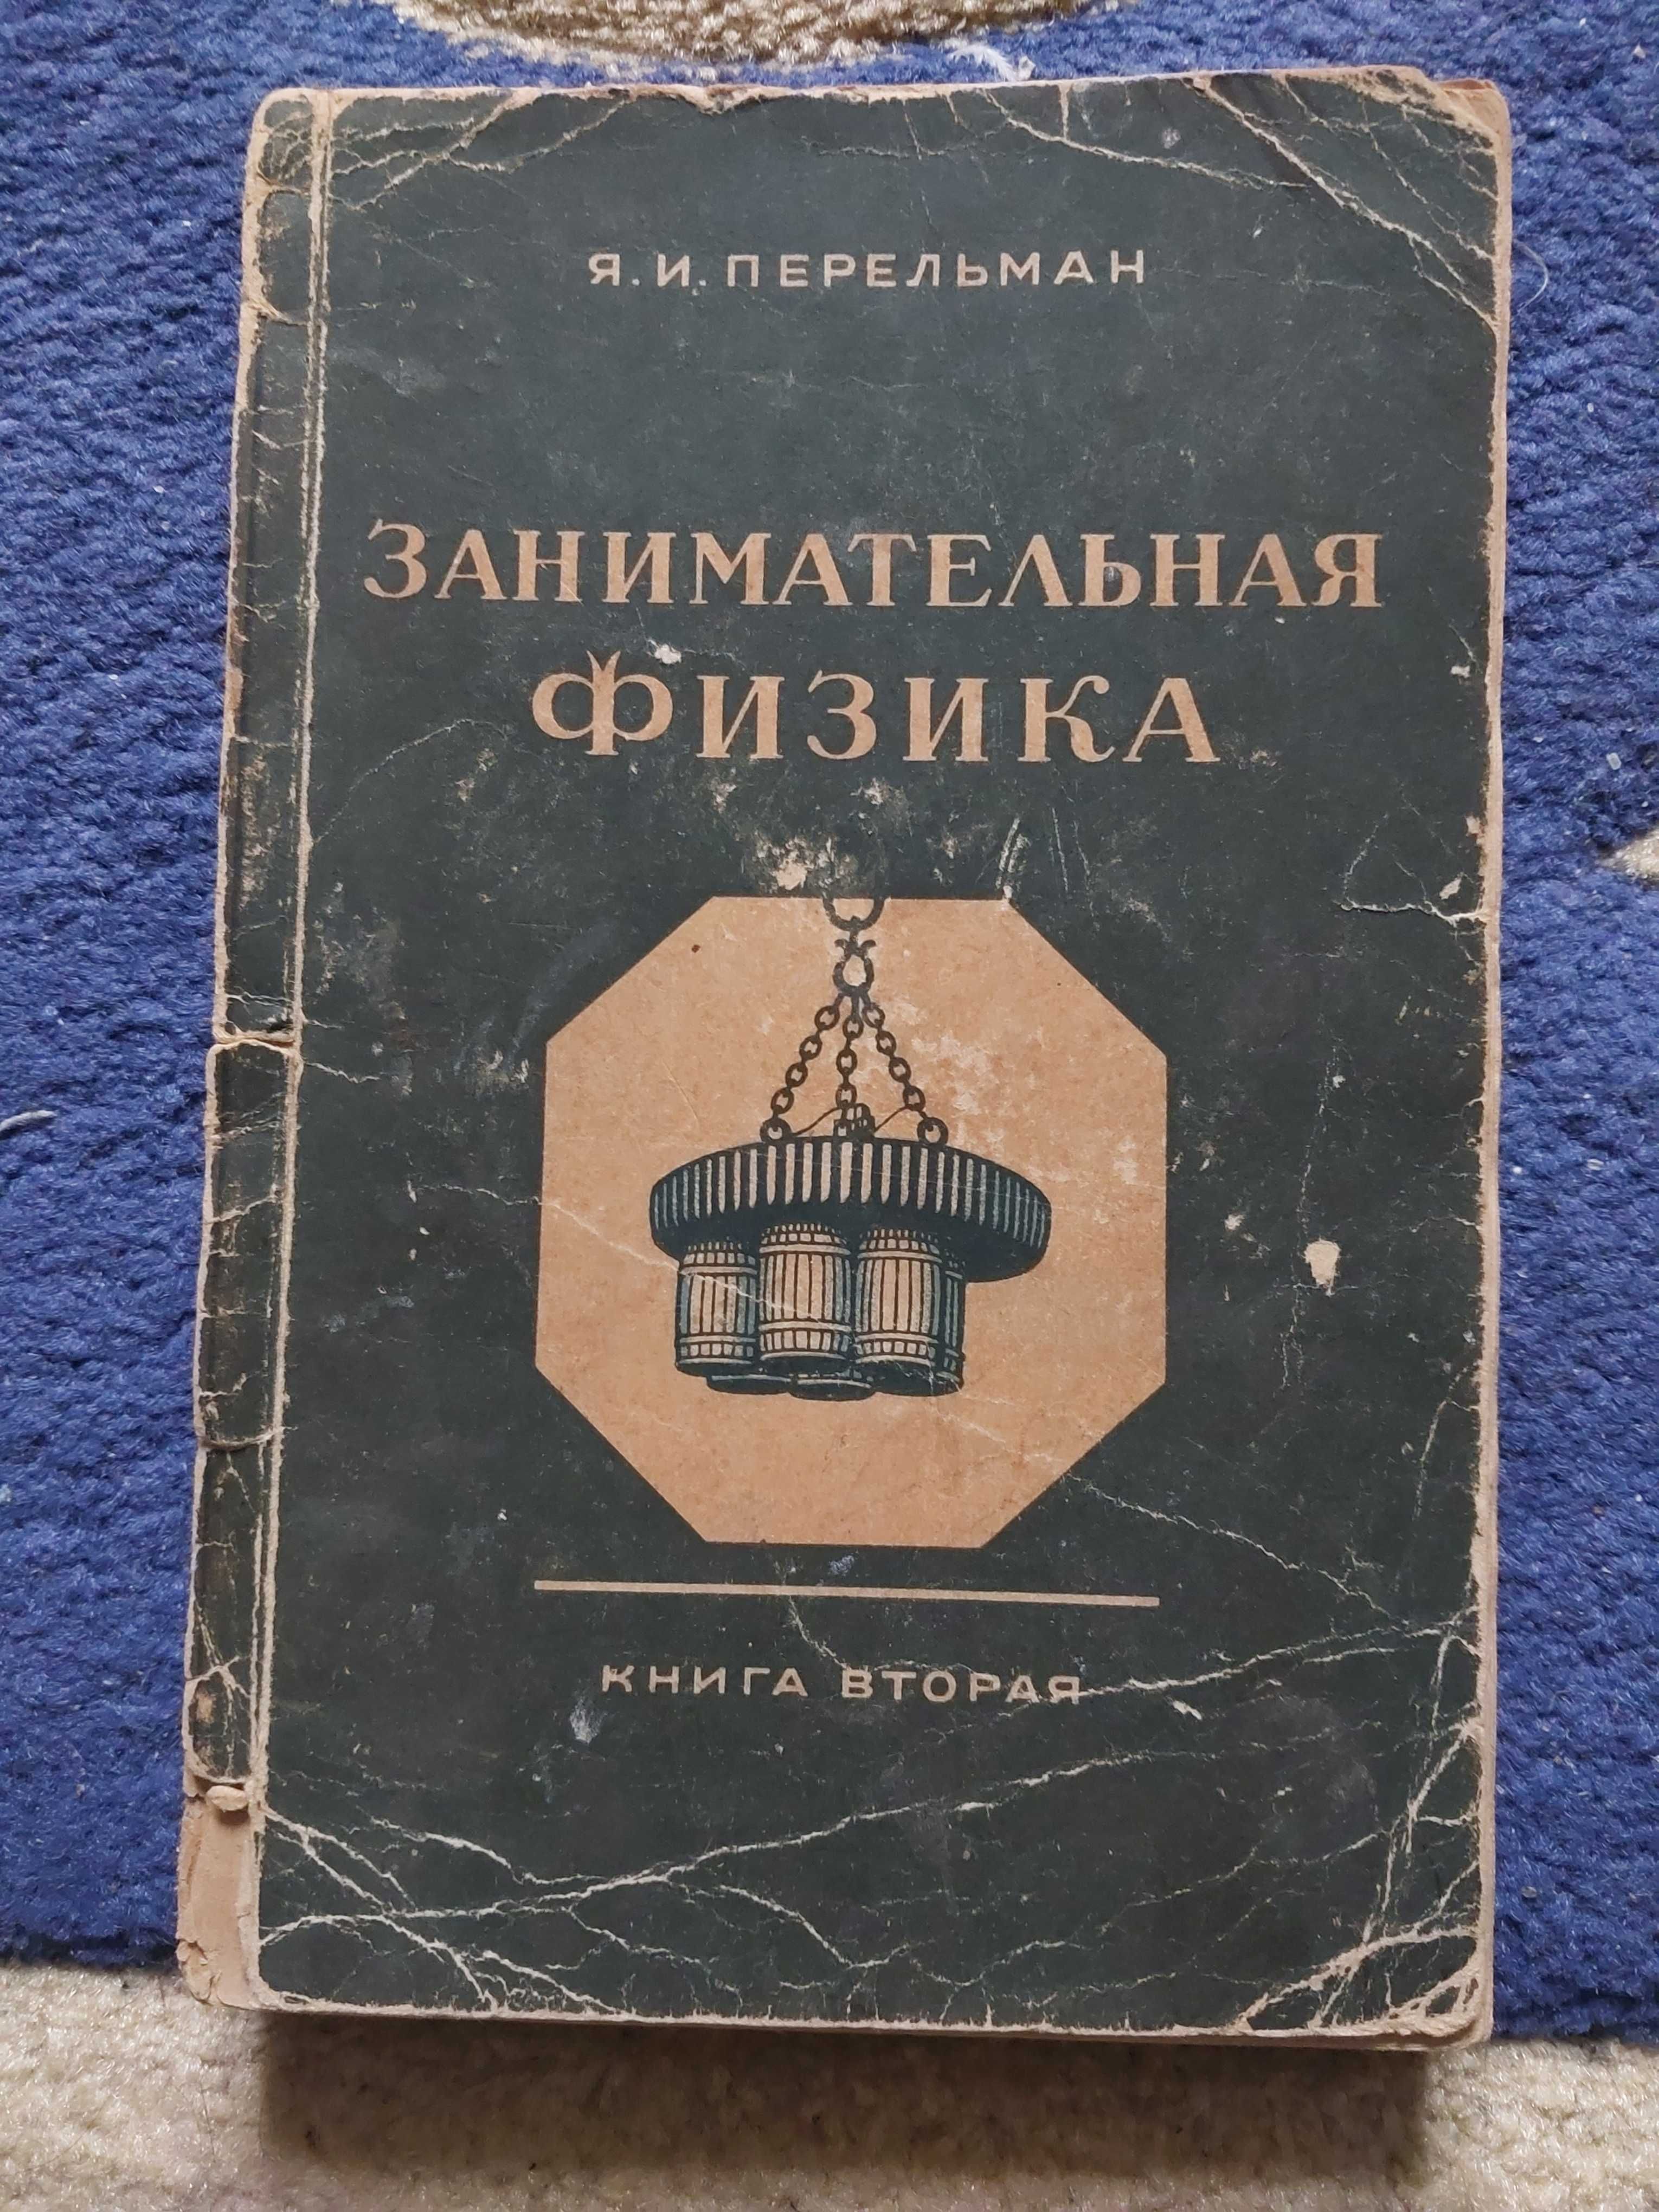 Продам книгу "Занимательная физика", Я.И. Перельман, 1949 р